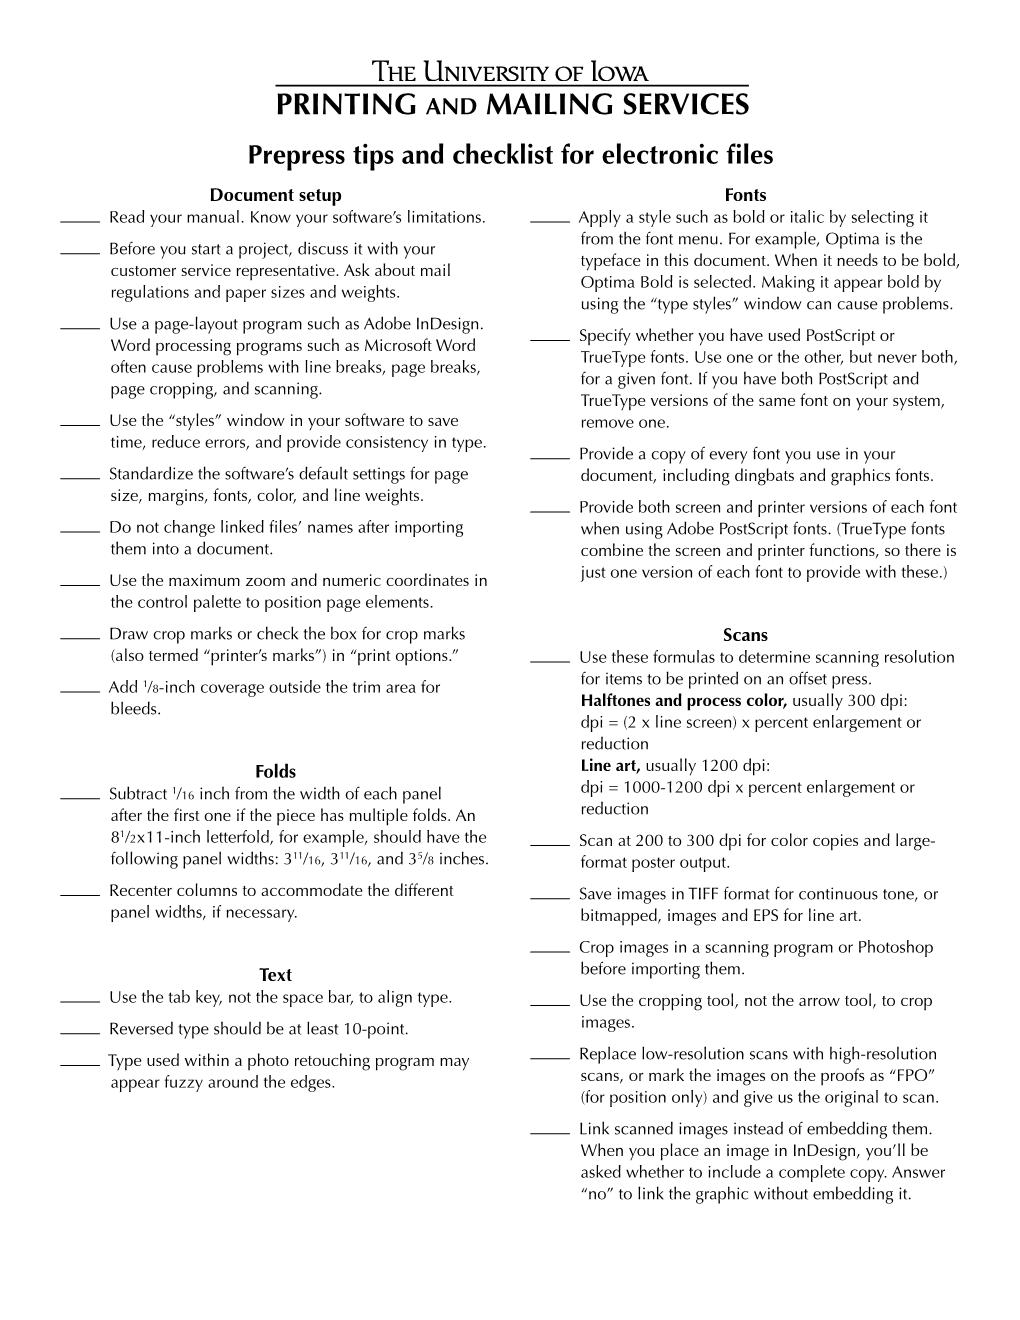 Prepress Checklist